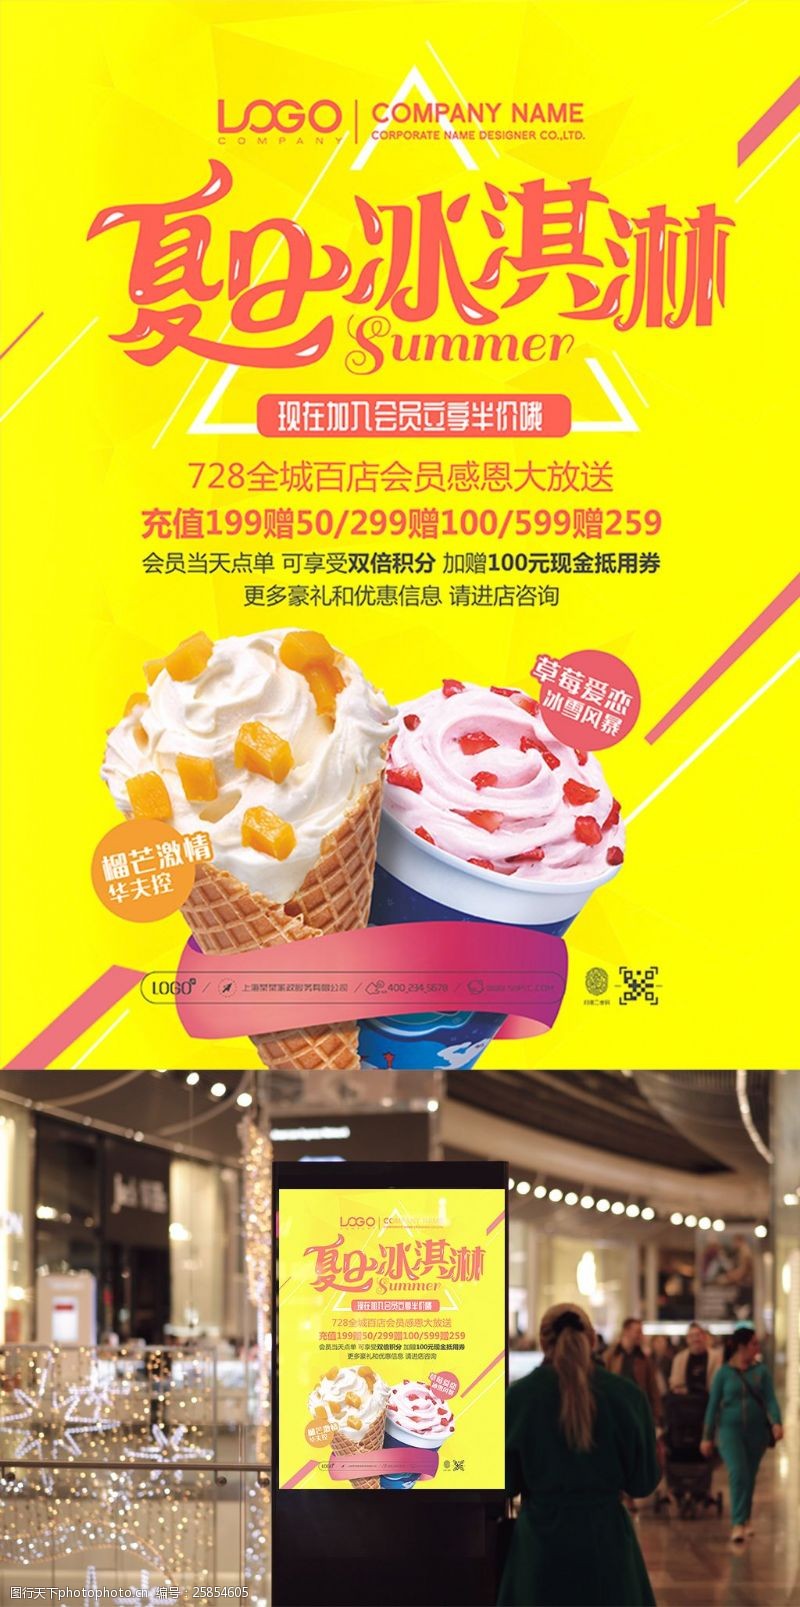 夏日活动宣传黄色简约夏日冰淇淋促销活动海报设计